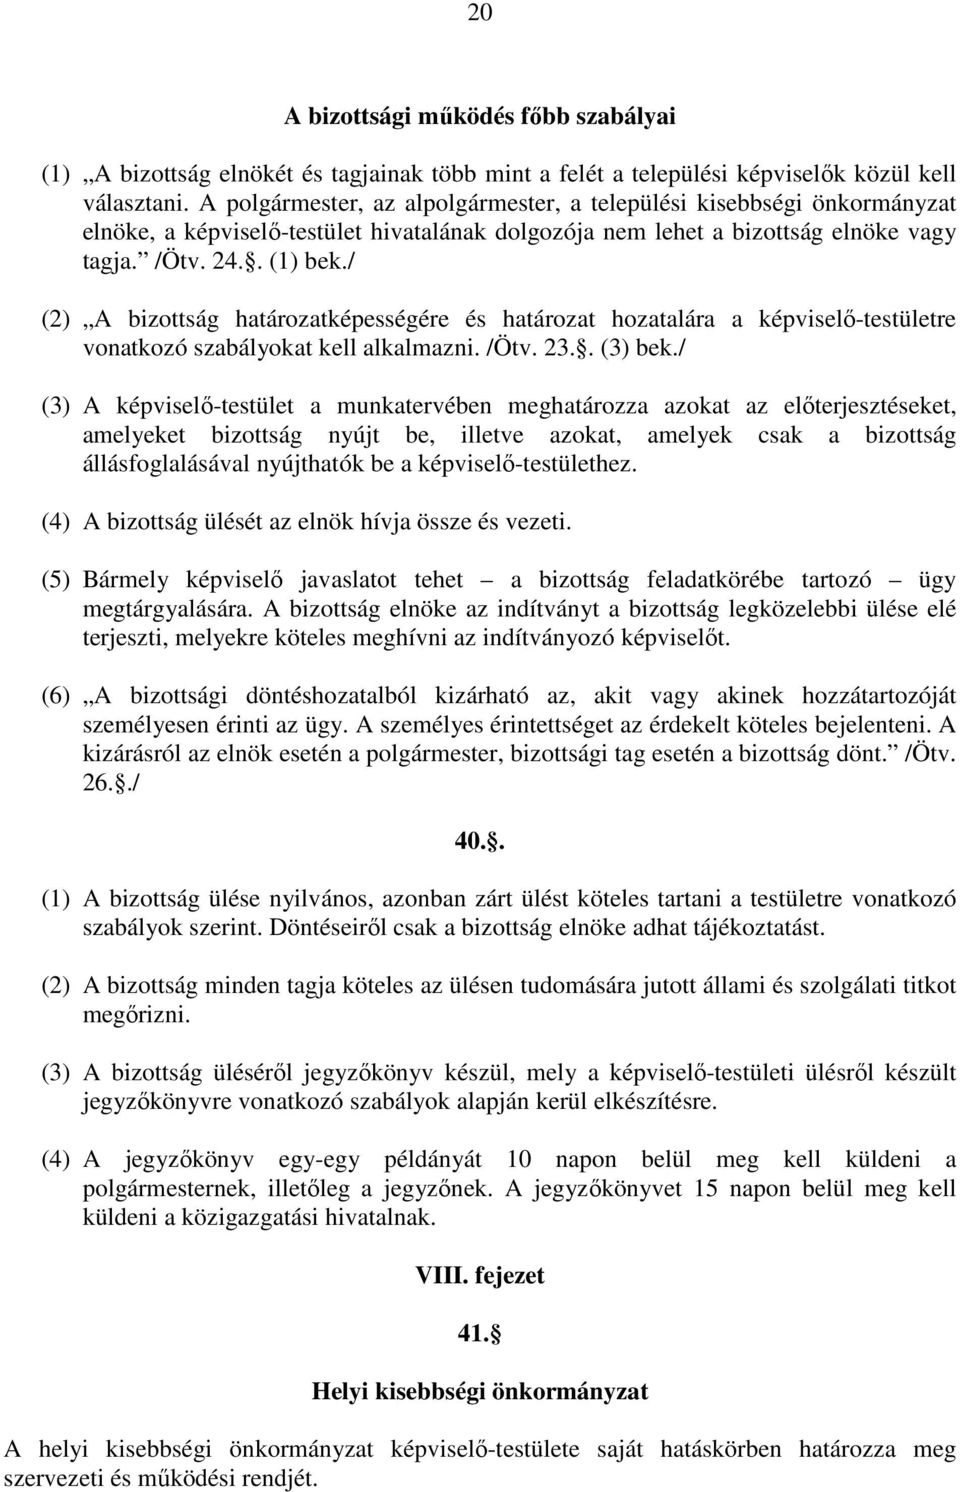 / (2) A bizottság határozatképességére és határozat hozatalára a képviselı-testületre vonatkozó szabályokat kell alkalmazni. /Ötv. 23.. (3) bek.